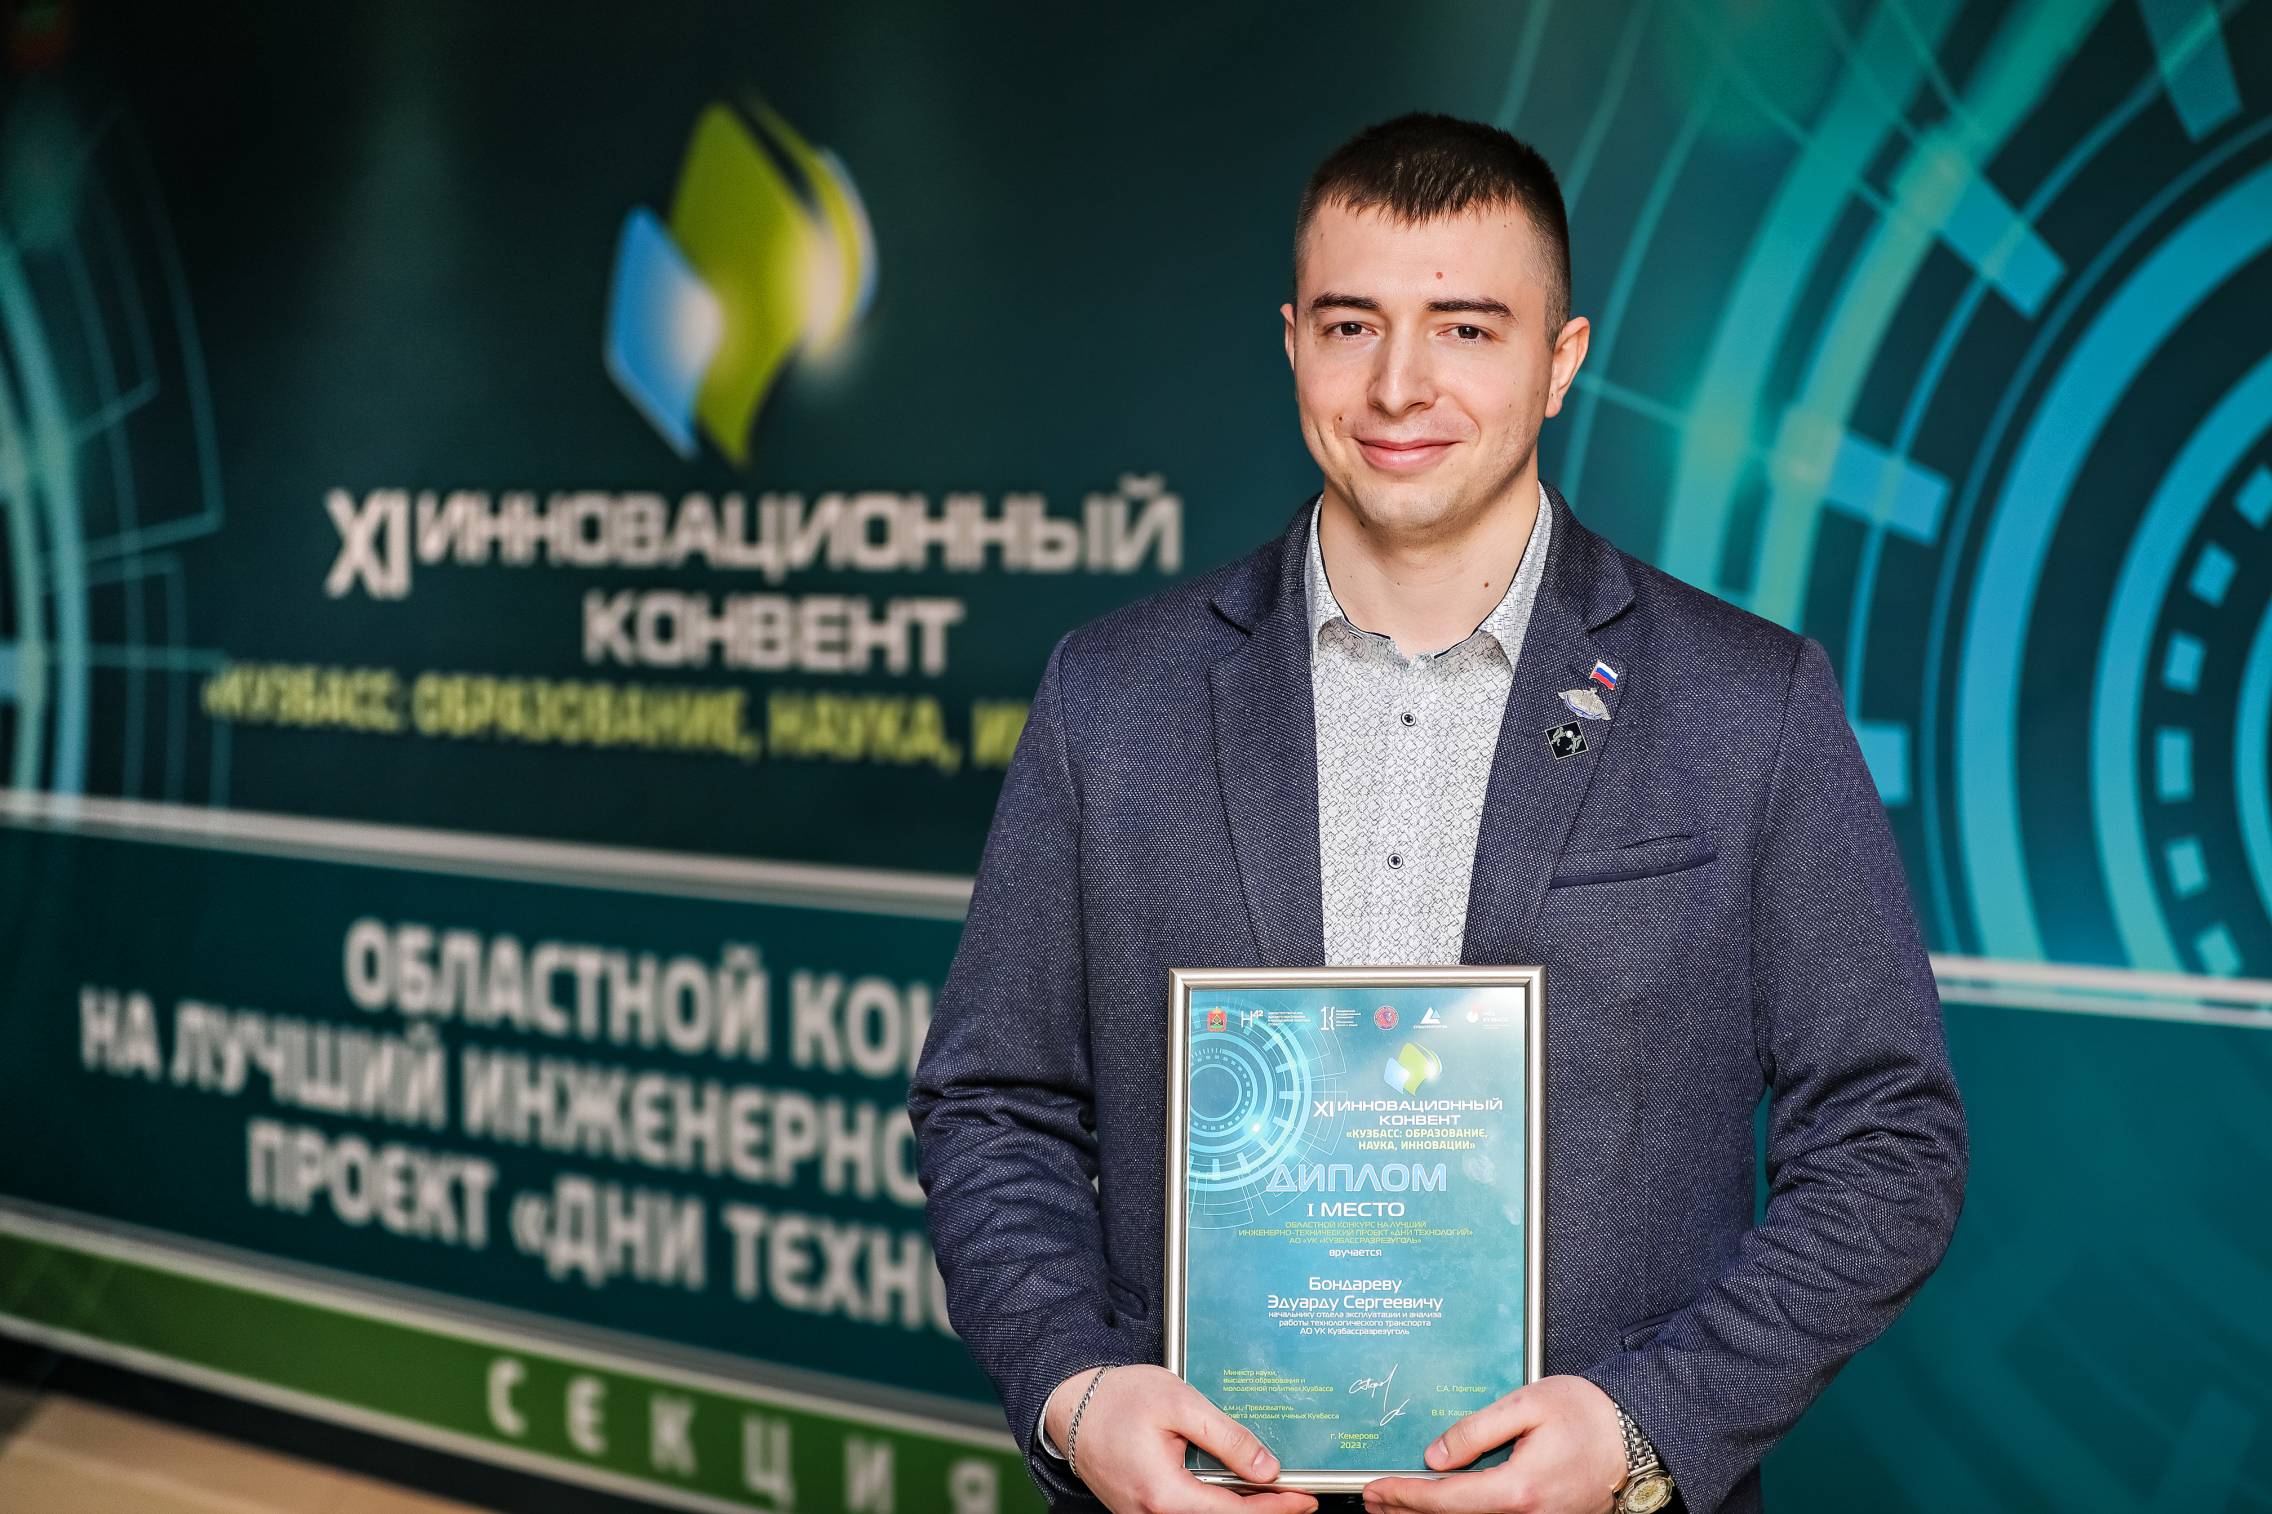 Проект УК «Кузбассразрезуголь» стал лучшим в областном конкурсе  «Дни технологий»